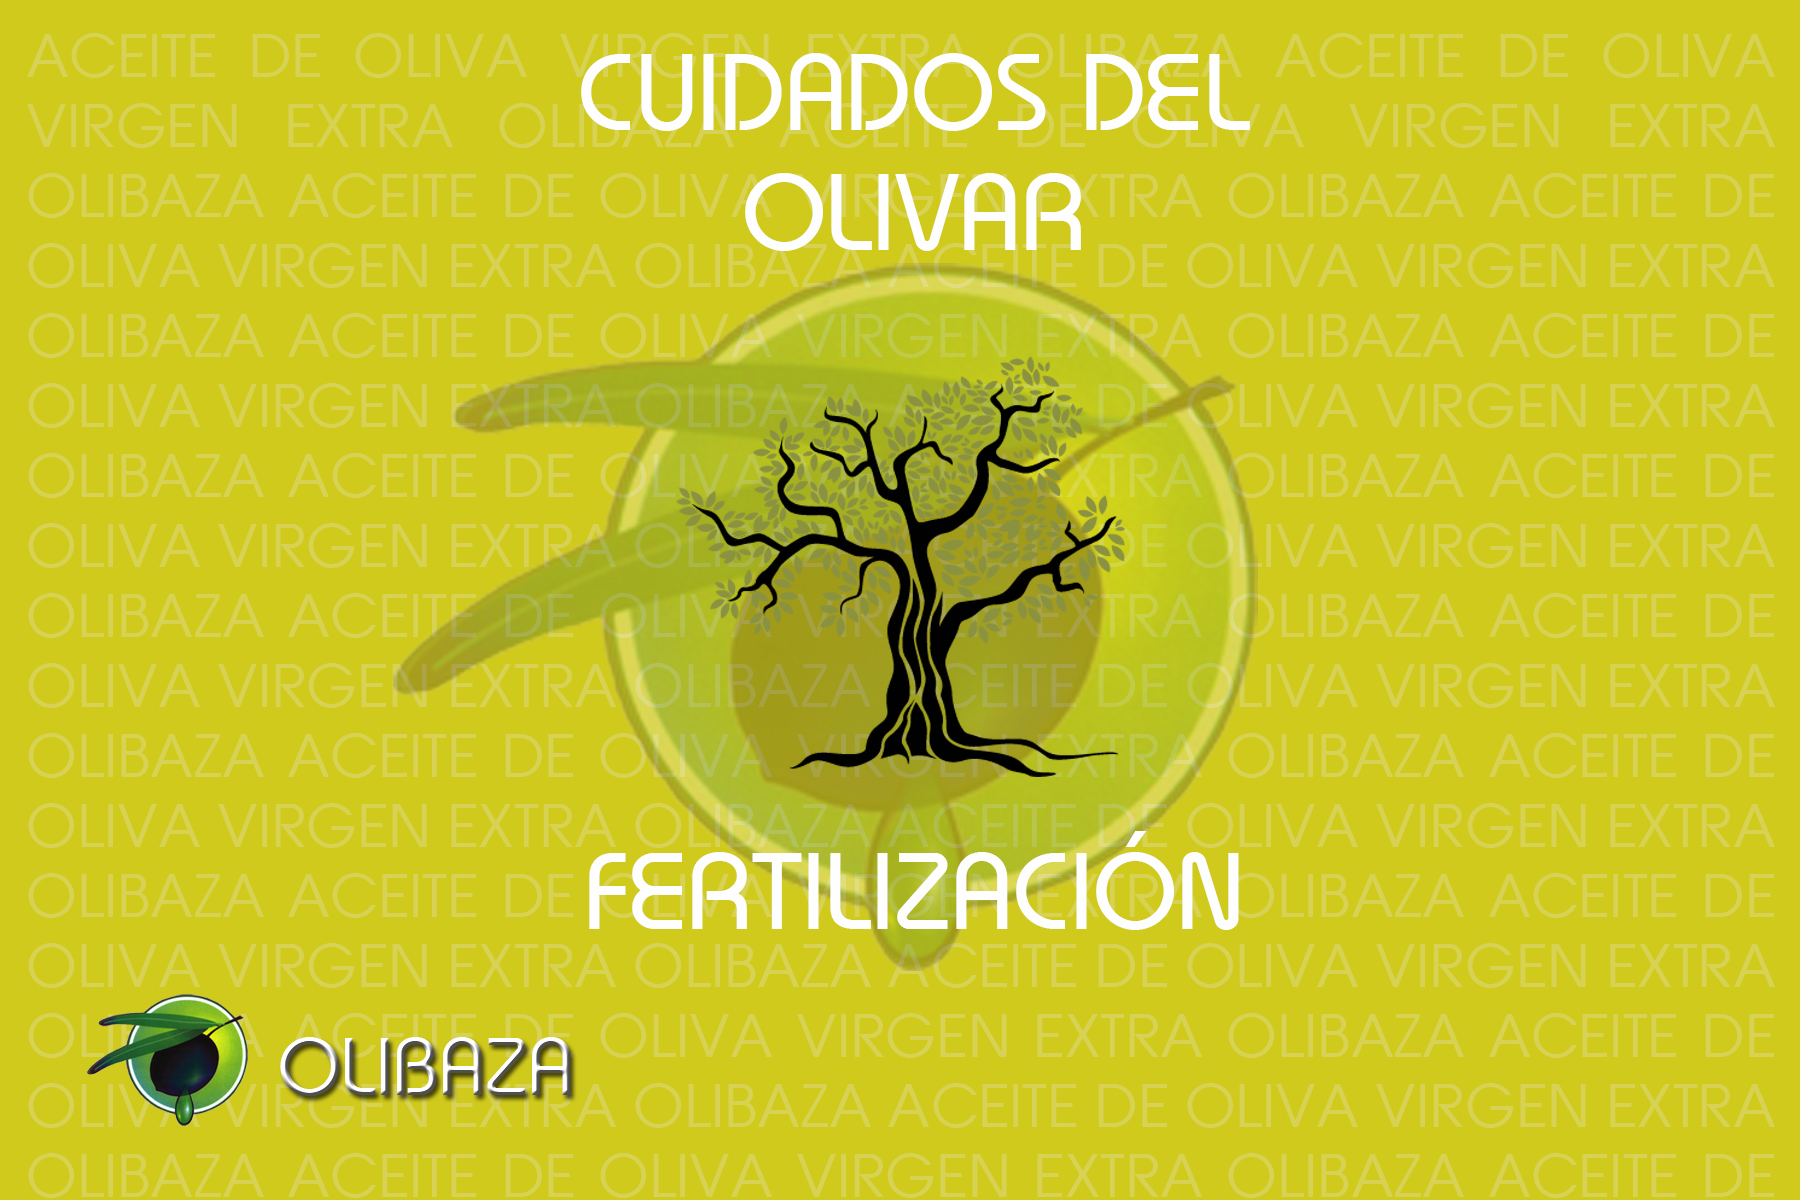 Cuidados del olivar 3: La Fertilización